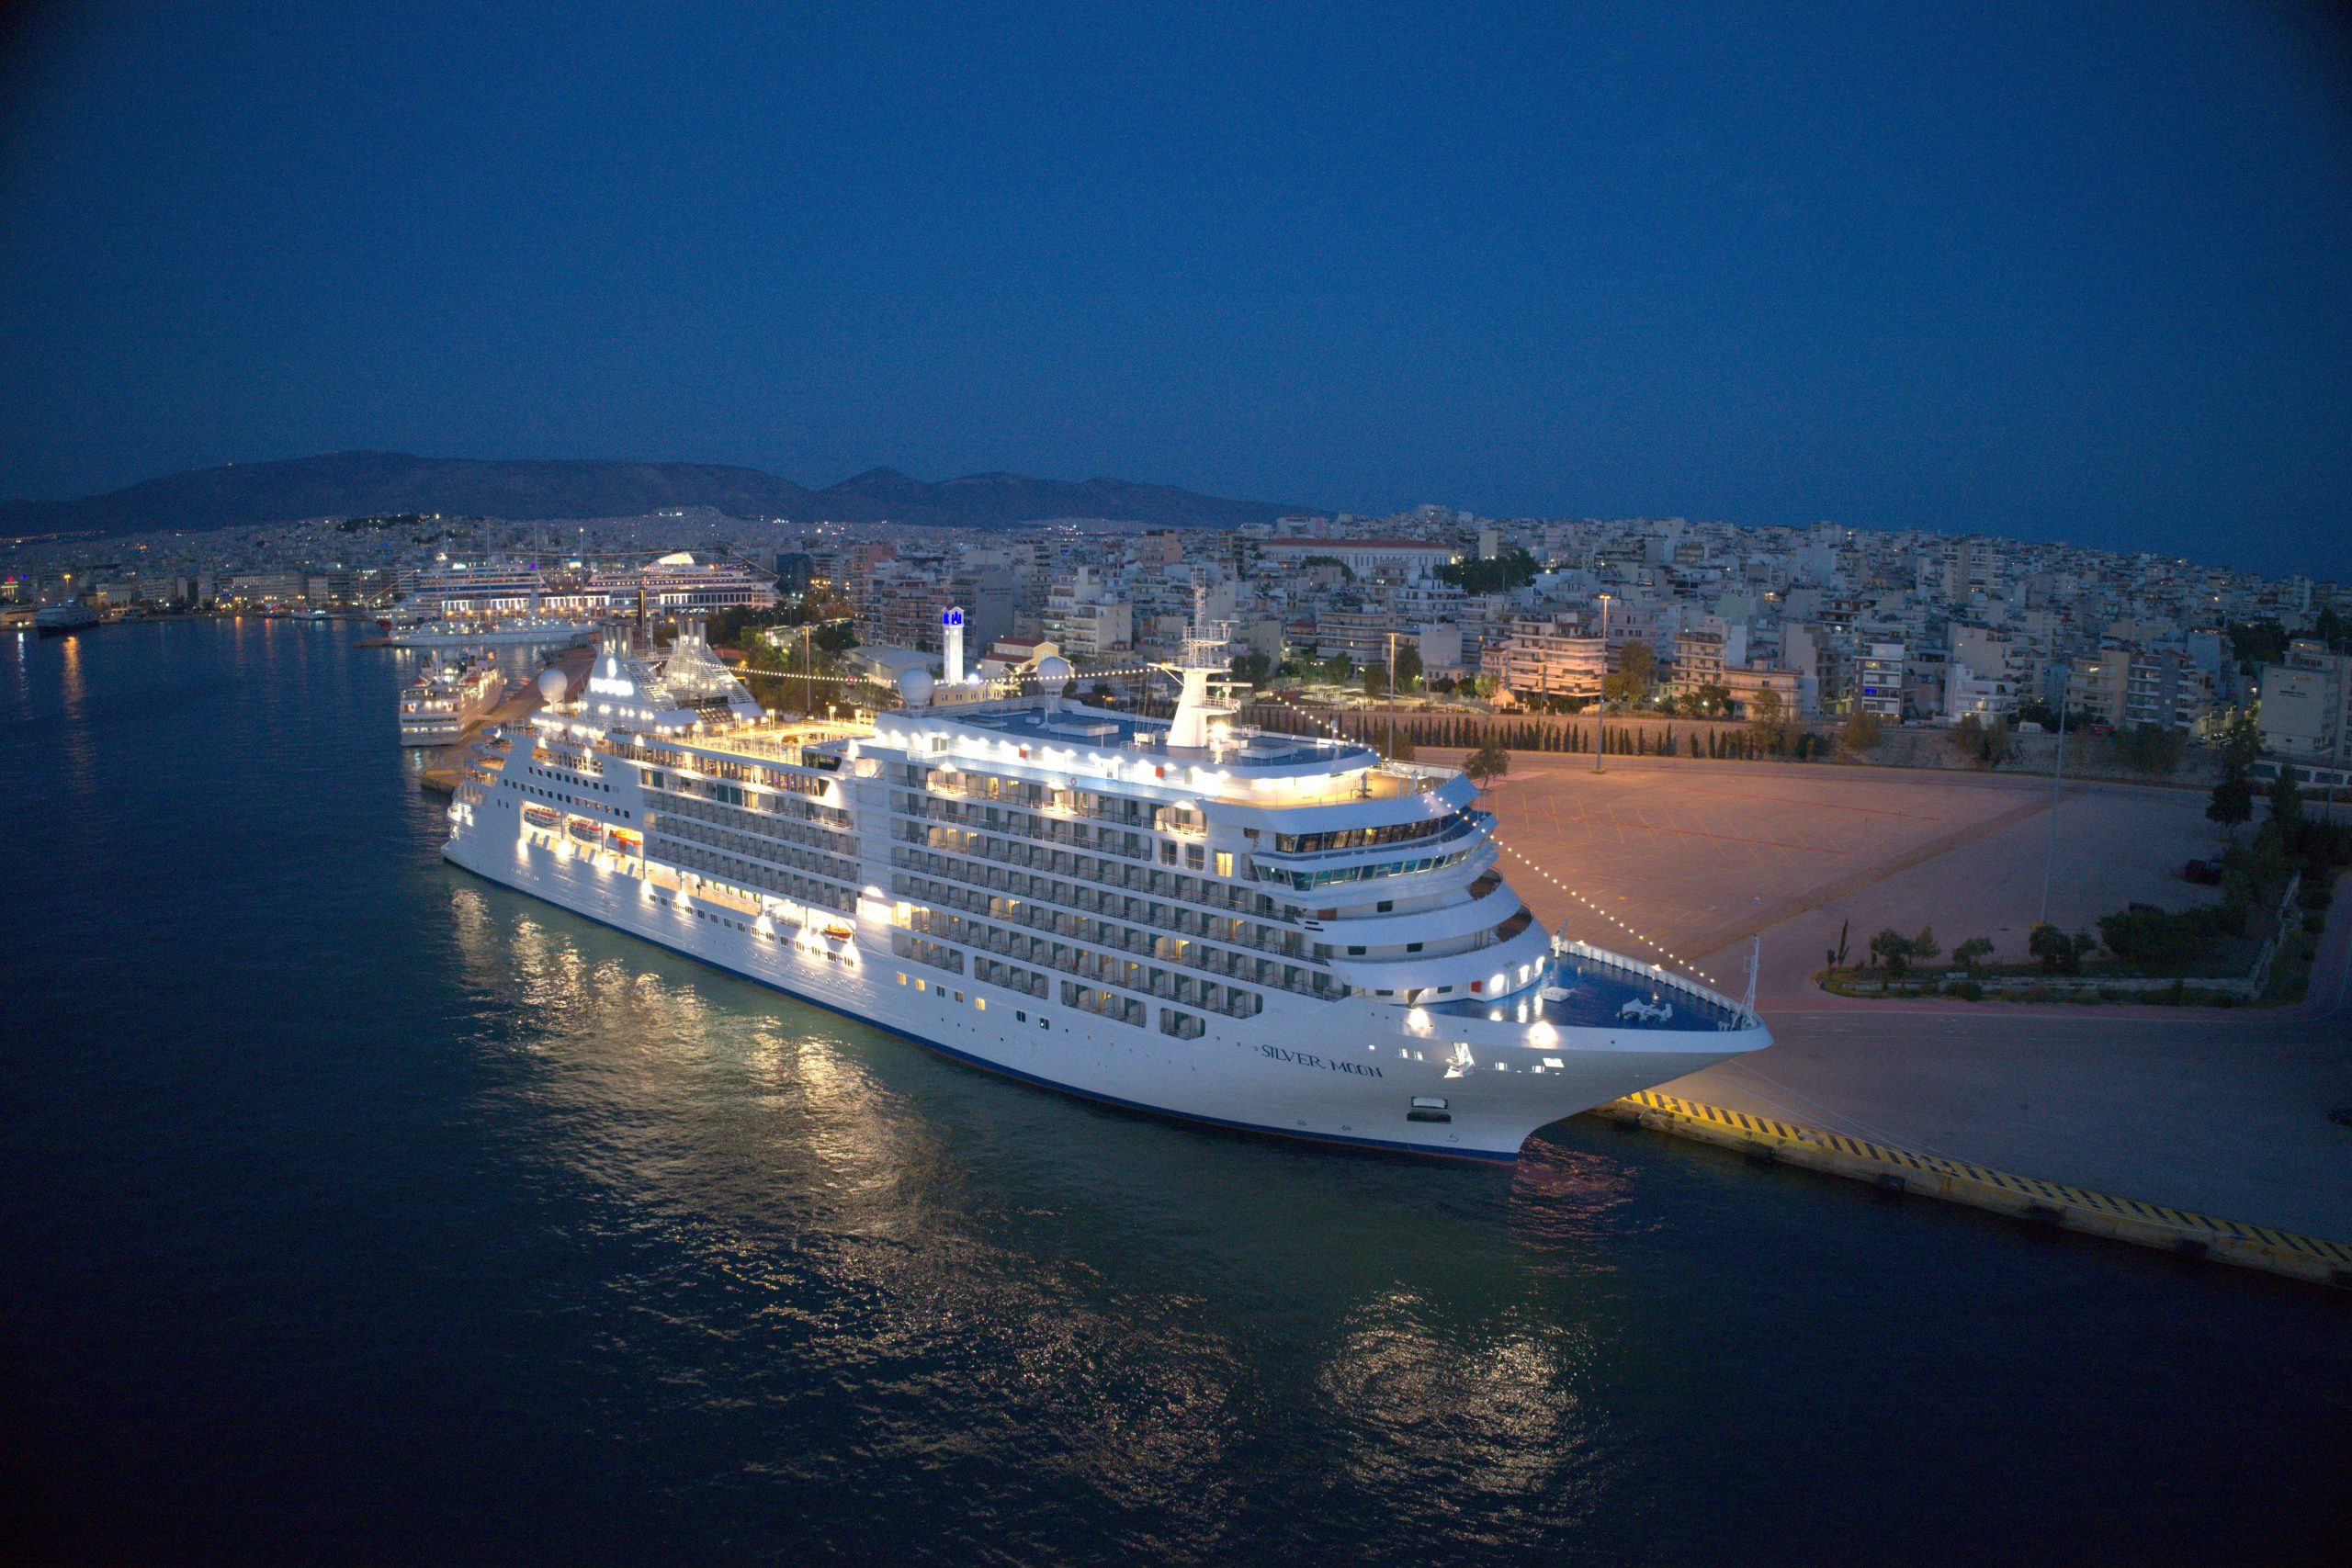 Προέδρος της Royal Carribean Cruises: Η ελληνική κυβέρνηση στήριξε την παγκόσμια κρουαζιέρα